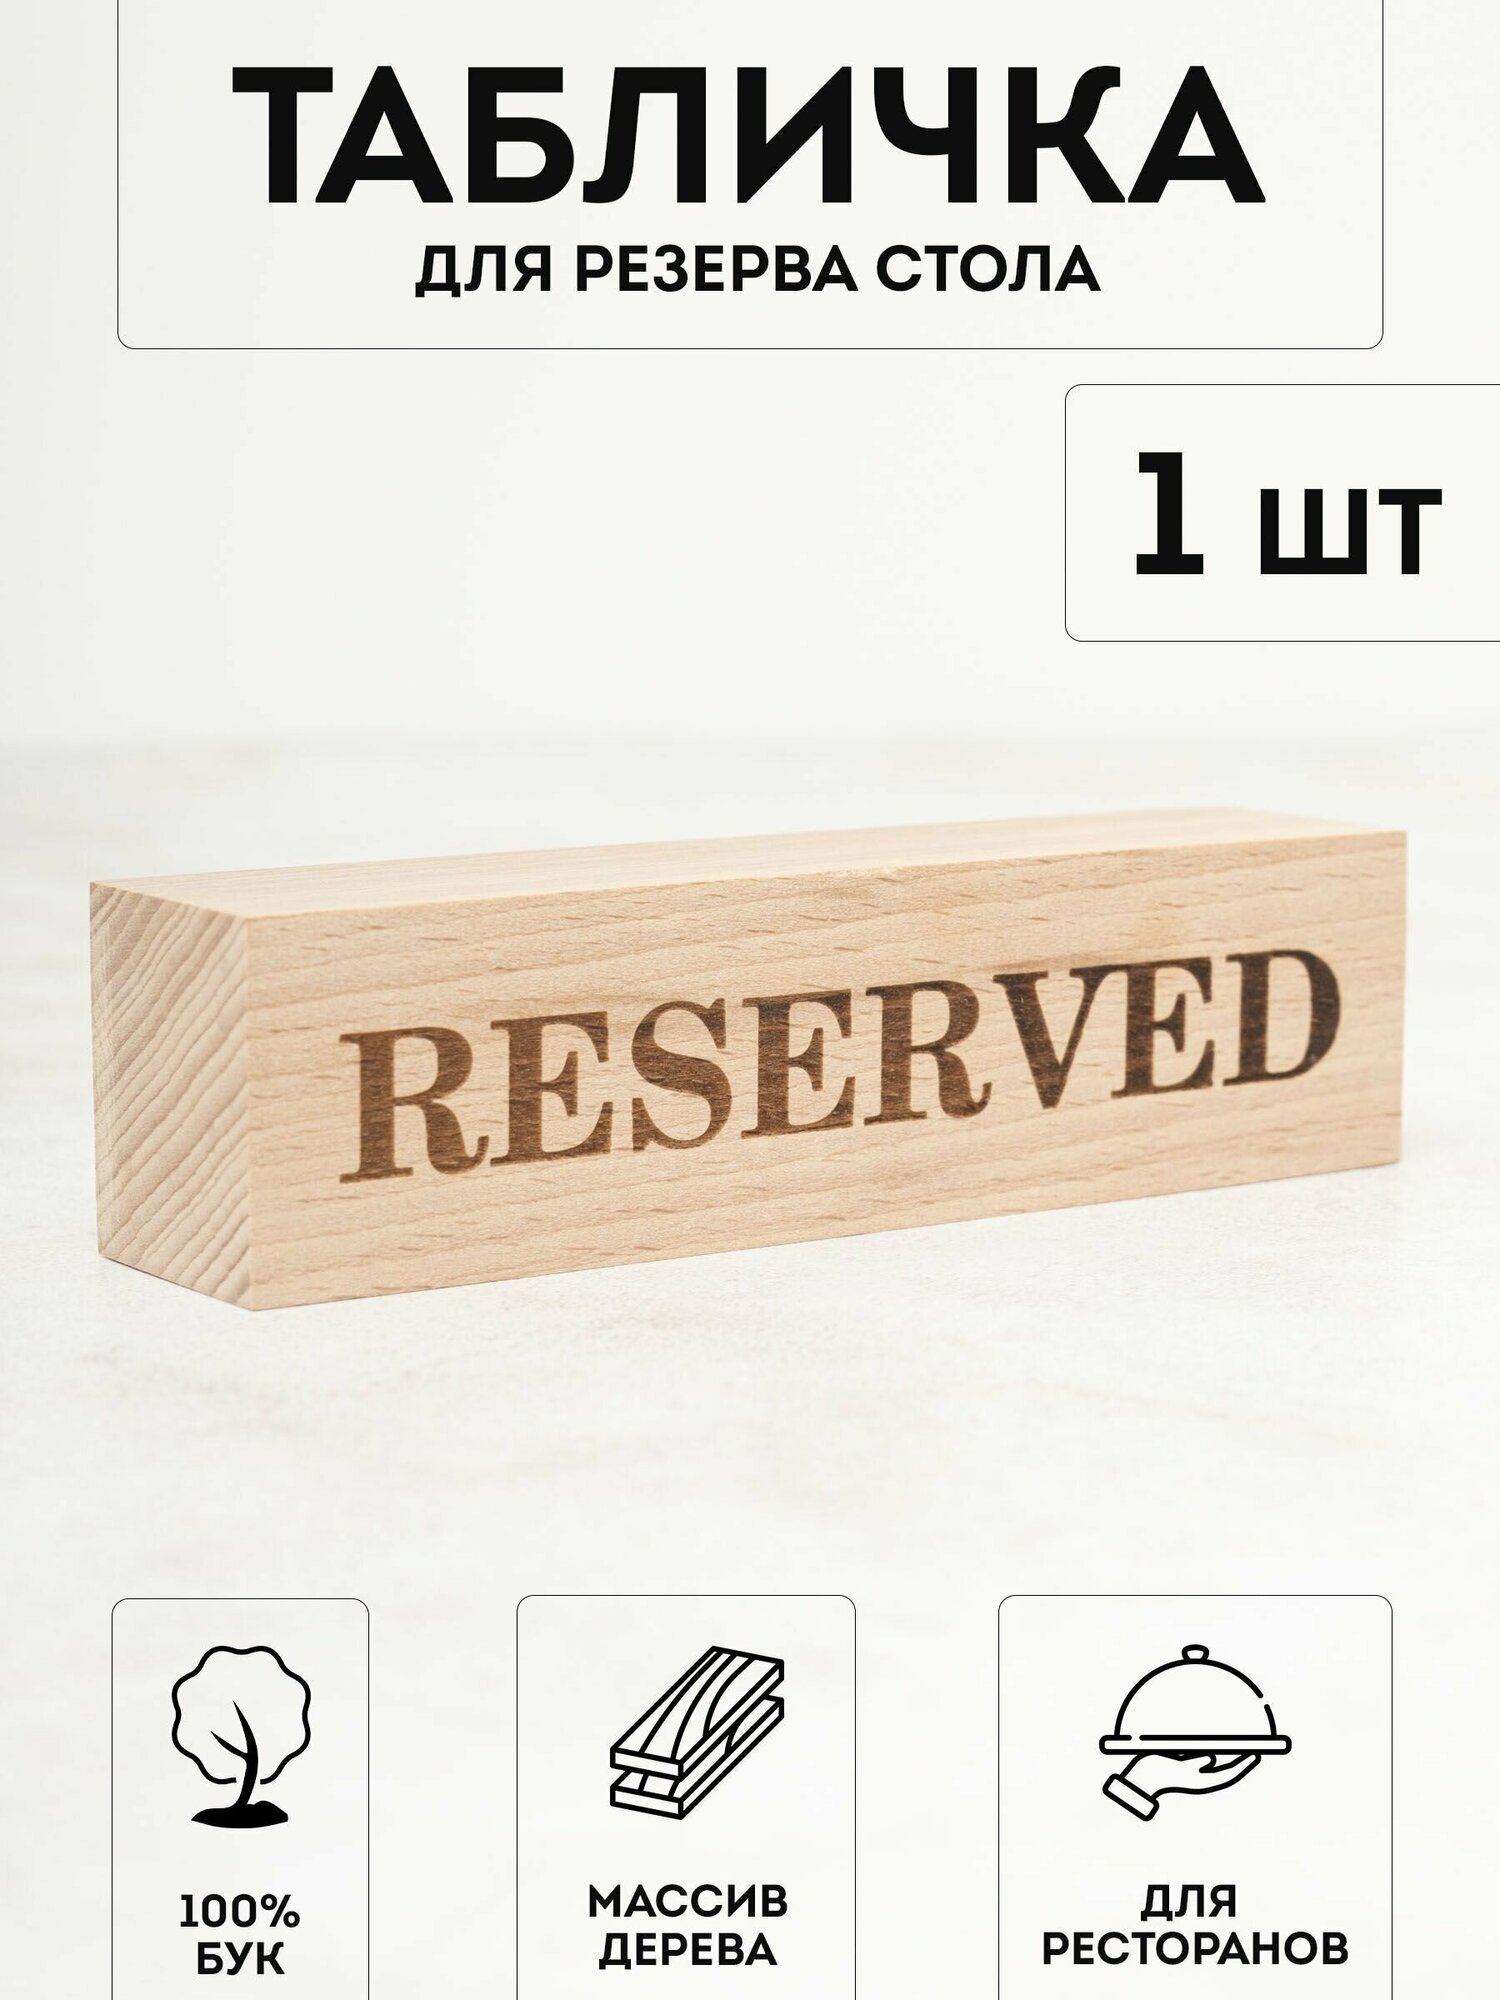 Настольная табличка деревянная RiForm "Reserved / зарезервировано / забронировано", двухсторонняя для брони столов в ресторанах, кафе, барах.